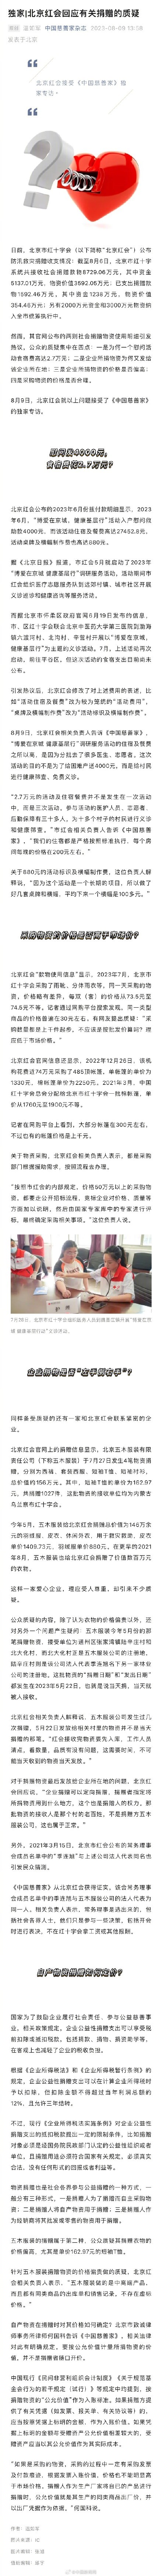 北京红会回应有关捐赠的质疑